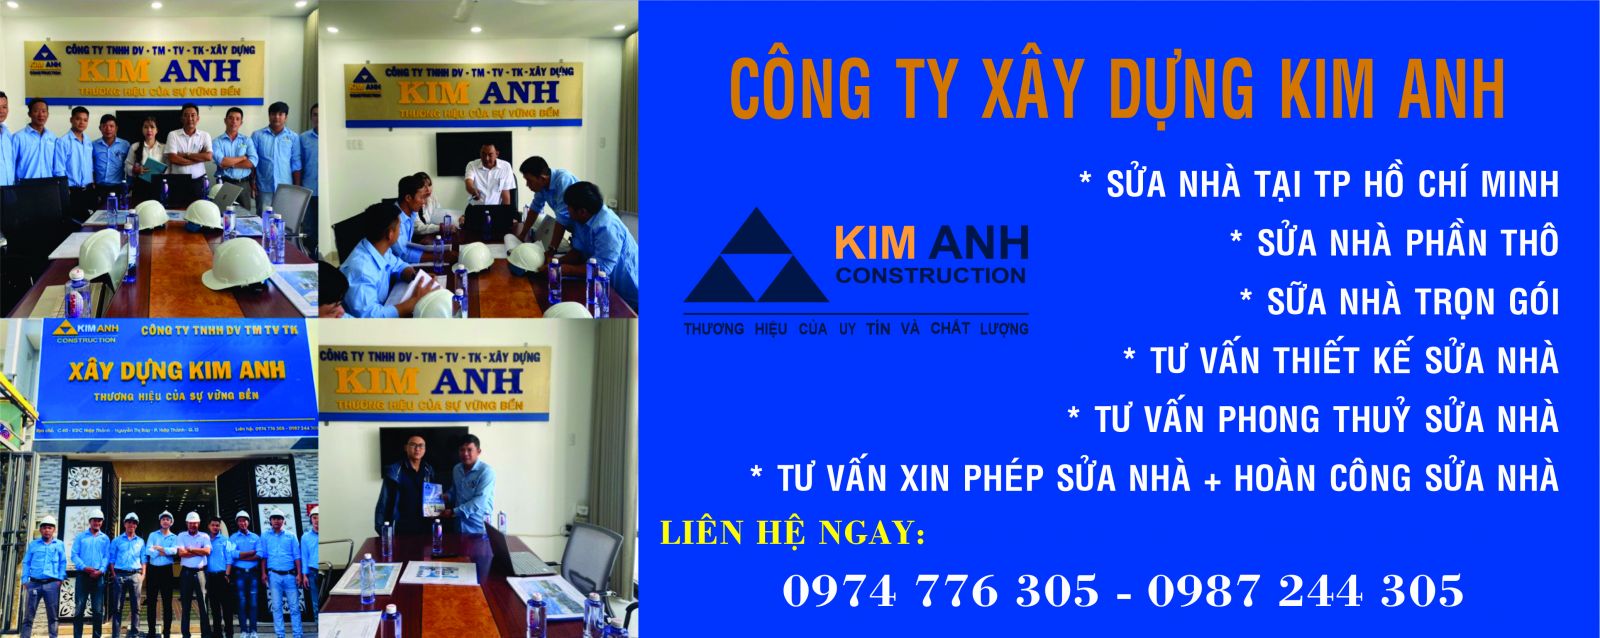 Sửa nhà tại TP HCM. Sửa chữa nhà nhanh uy tín, chuyên nghiệp-xaydungkimanh.com